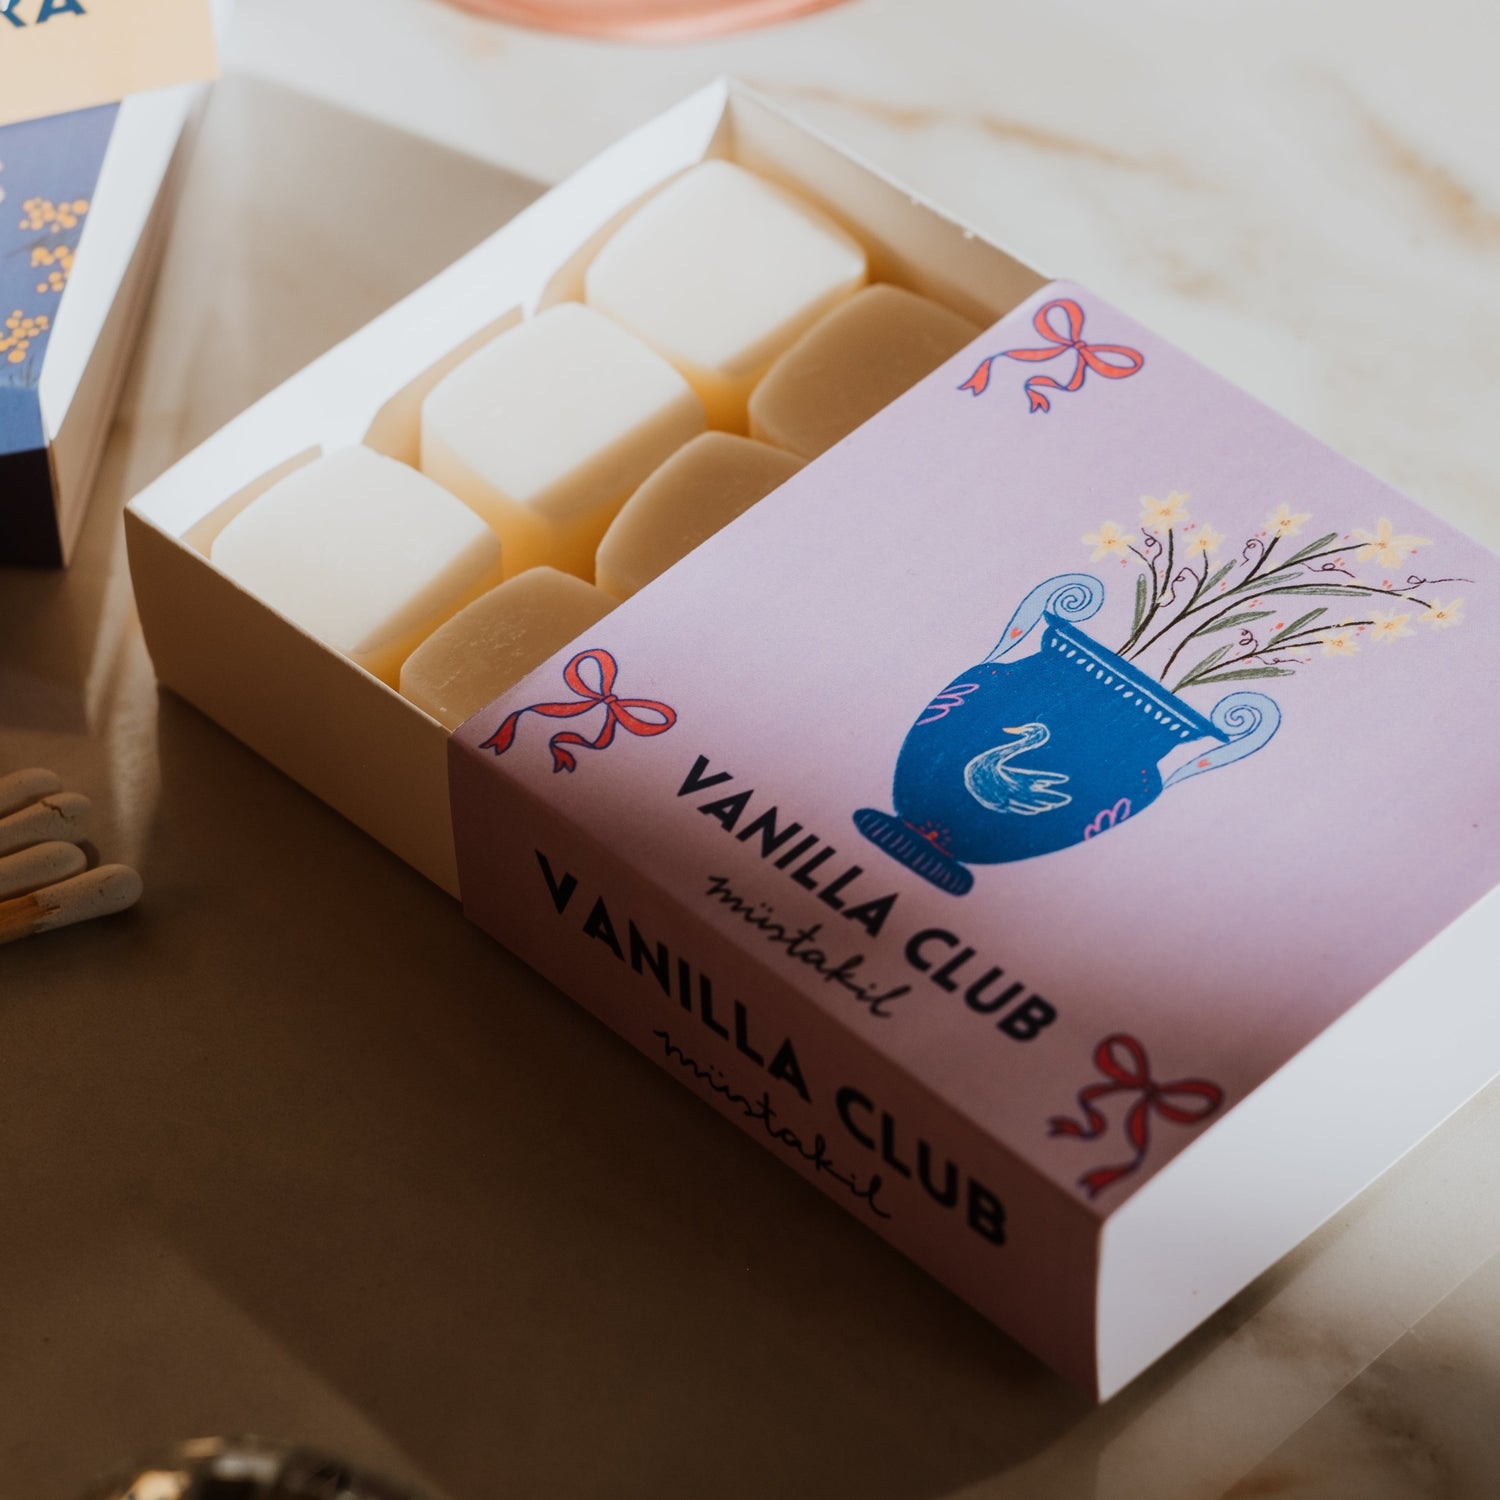 Vanilla Club Koku Barı